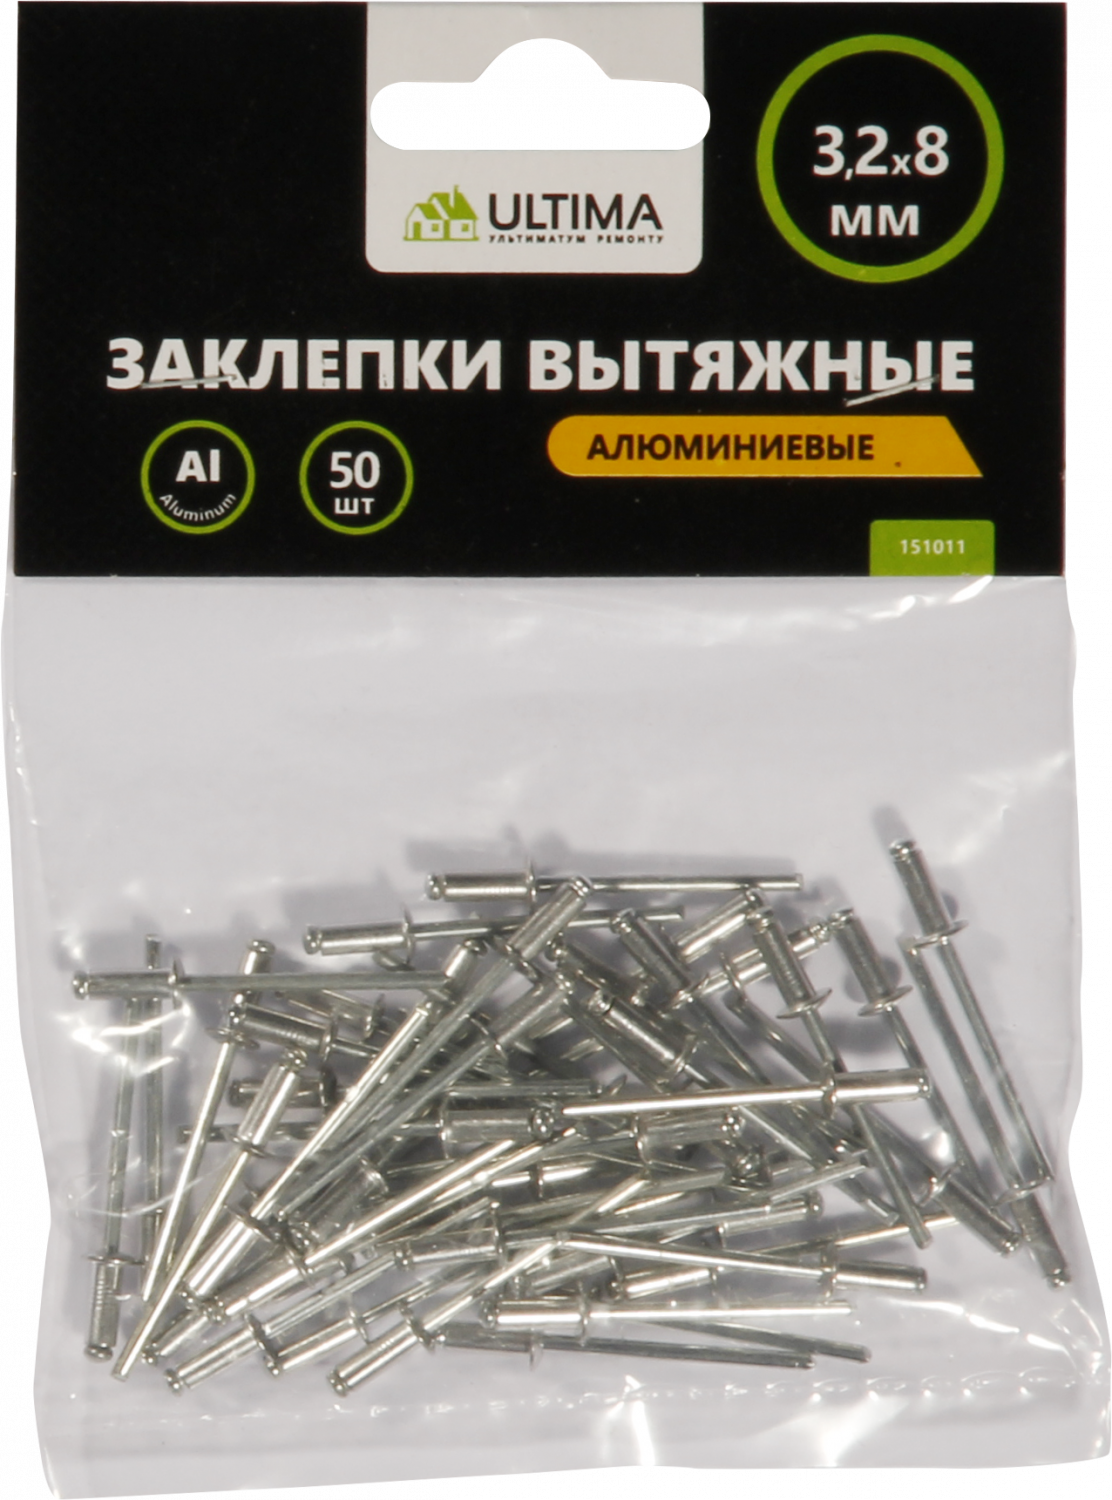 Заклепки вытяжные Ultima, алюминиевые, 3,2х8 мм, 50 шт в пакете